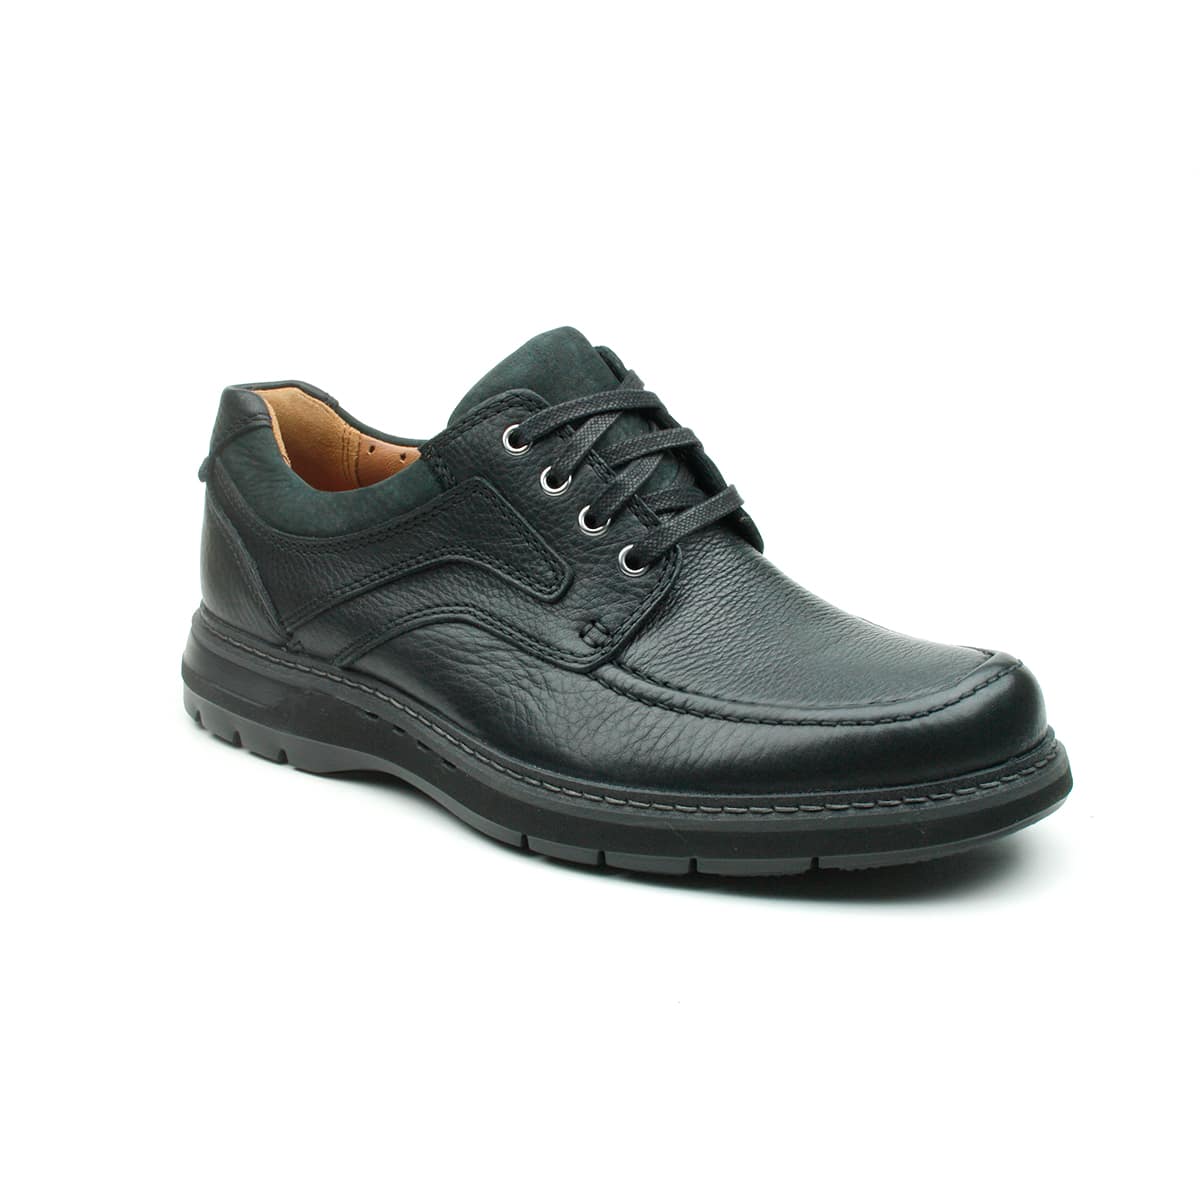 Clarks Un Ramble Lace Premium Leather Shoes - 121 Shoes